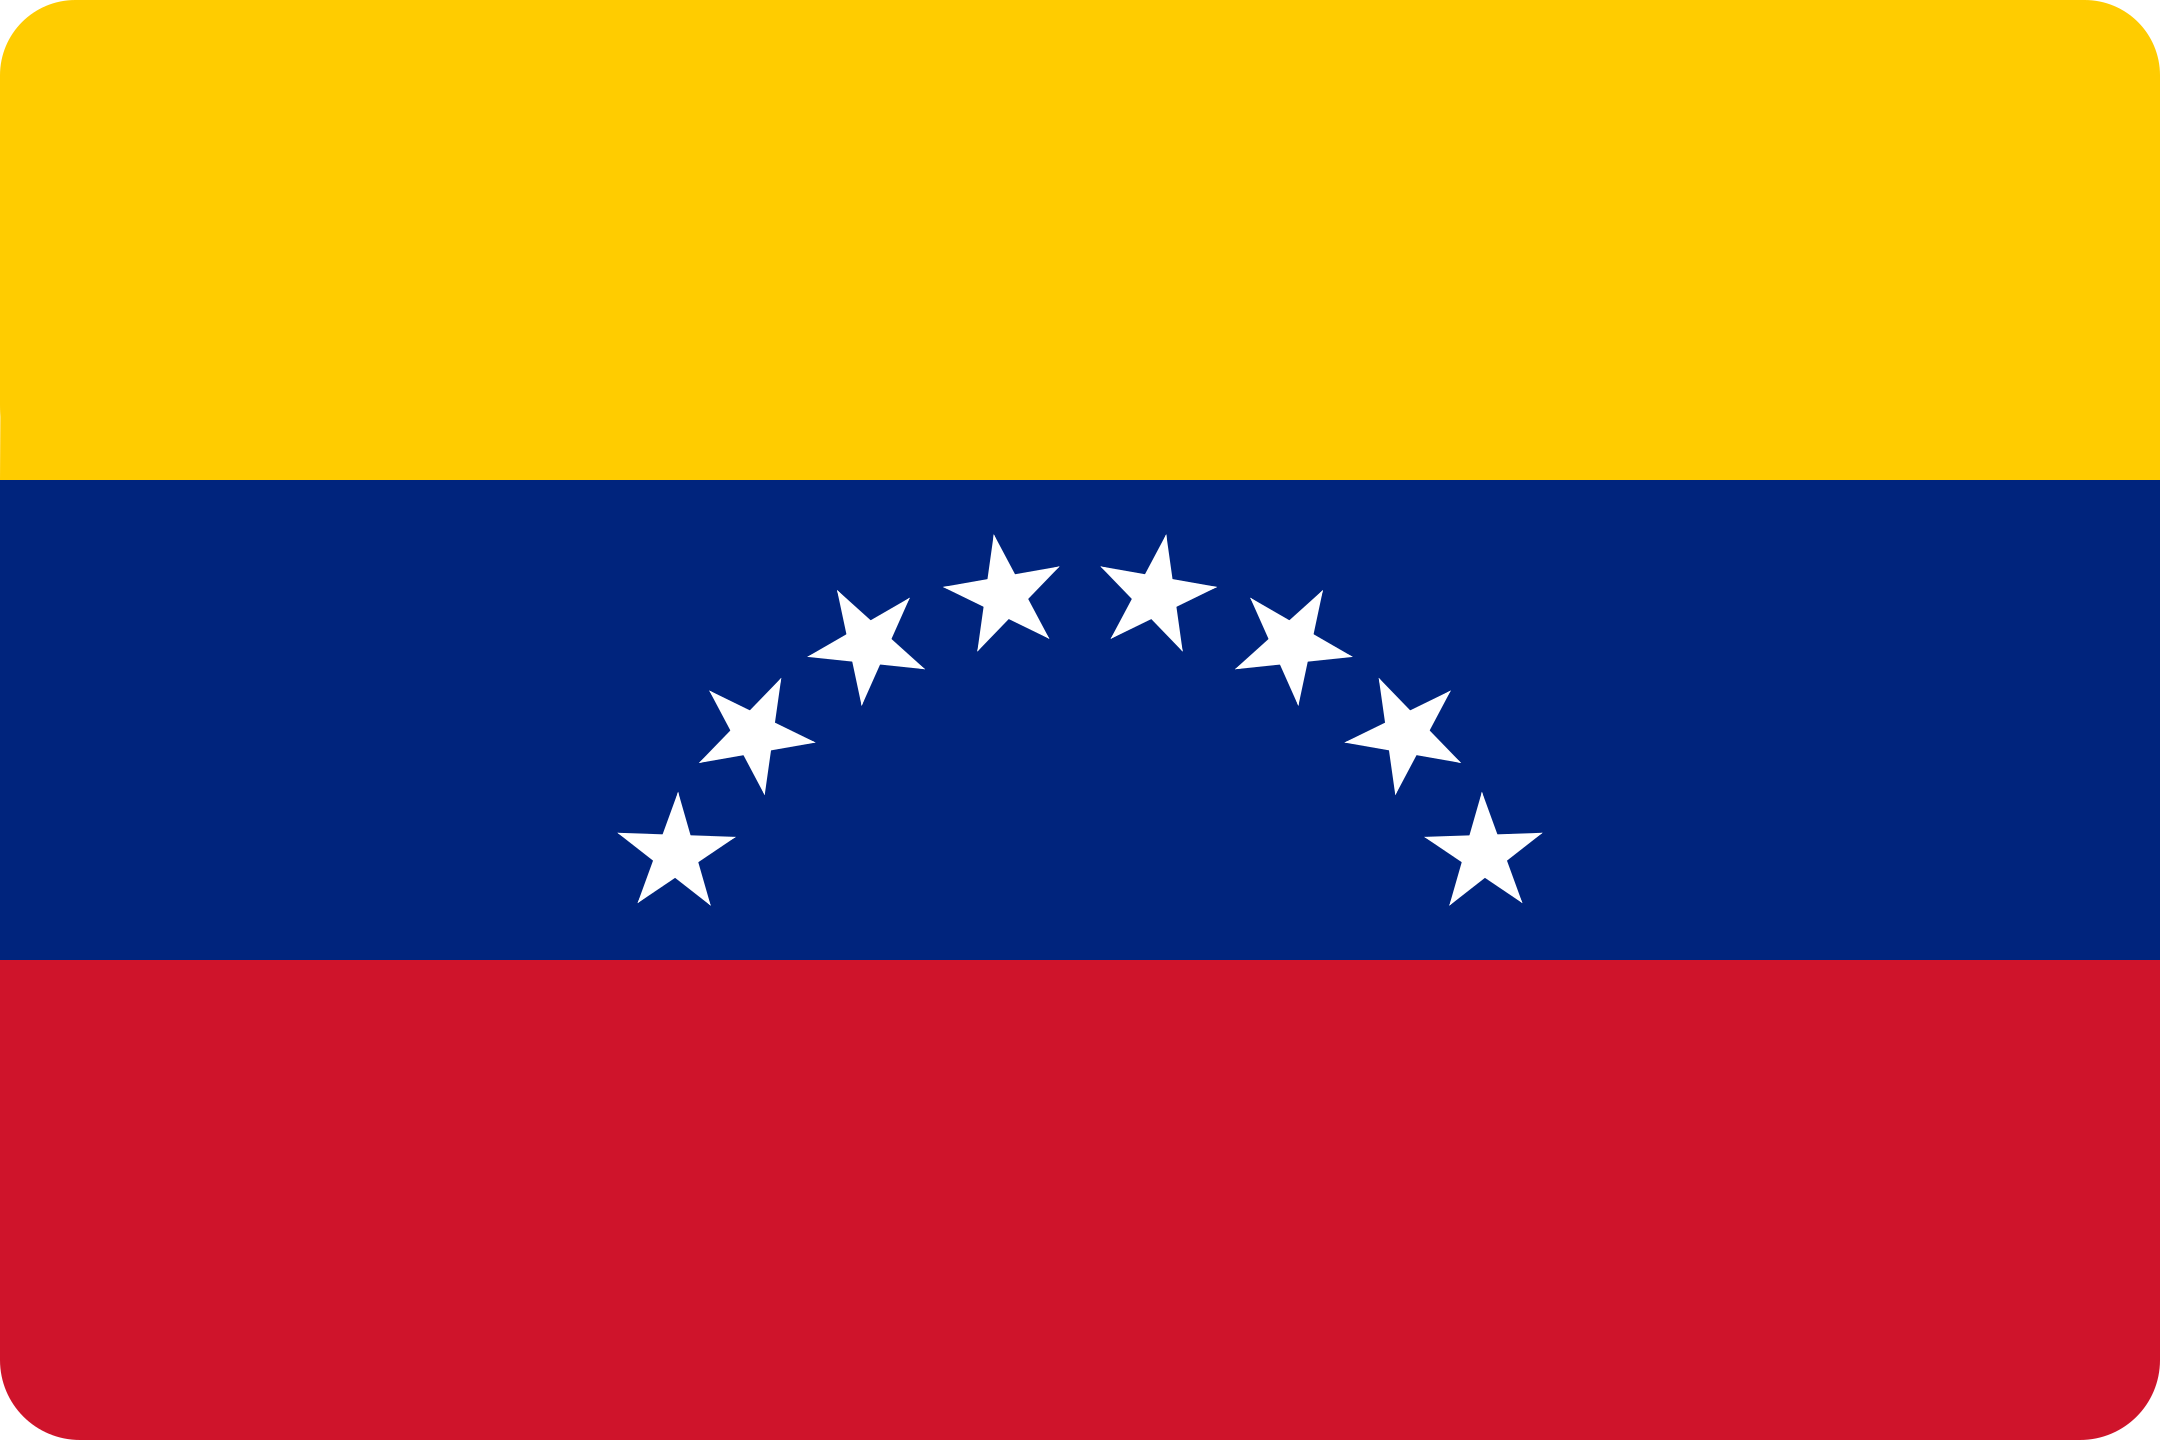 bandeira venezuela flag 1 - Flag of Venezuela